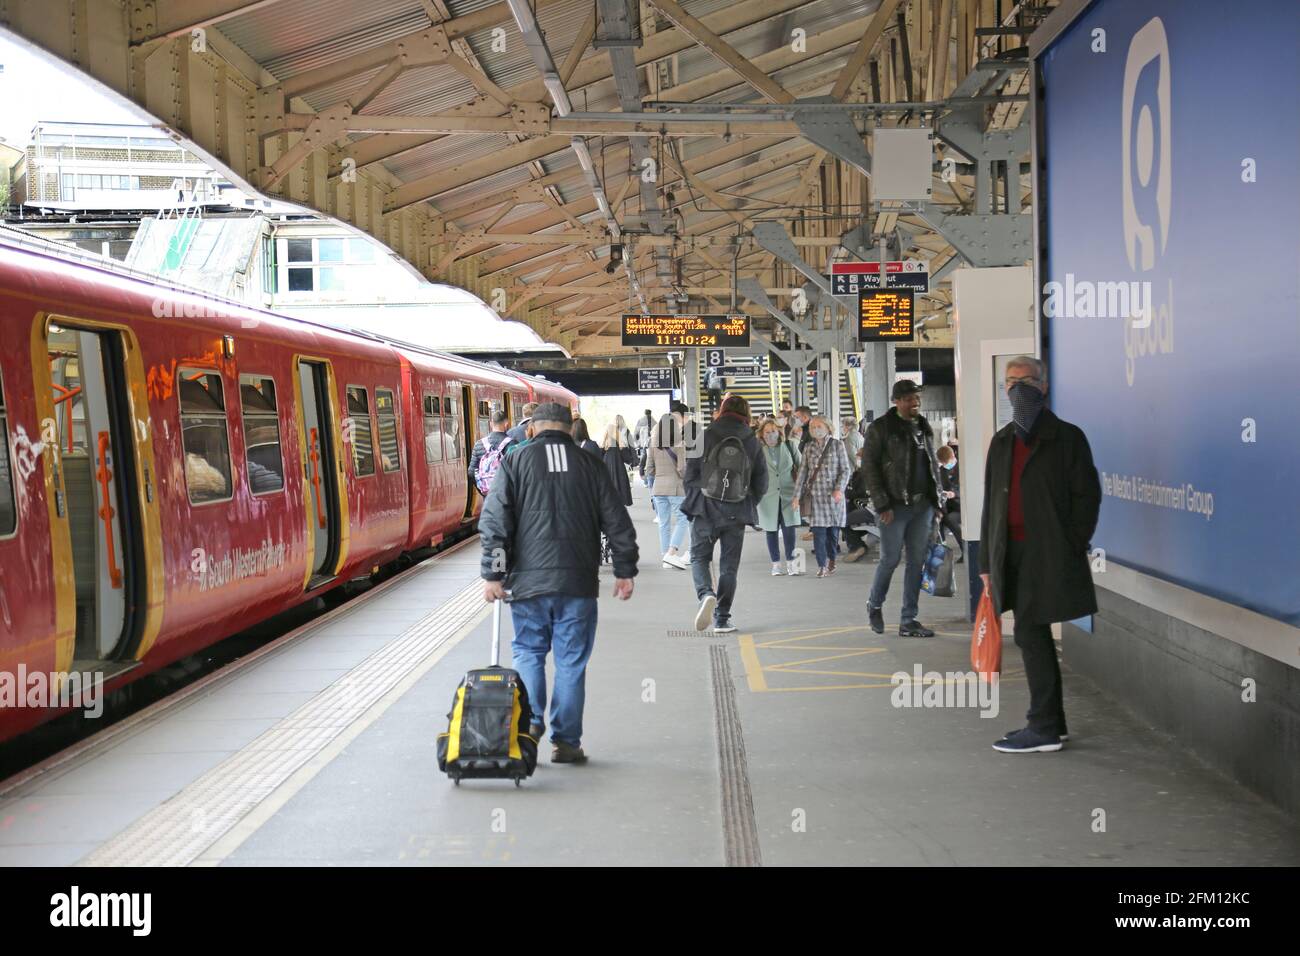 Der Bahnsteig am Bahnhof Wimbledon in London zeigt Passagiere und einen lokalen Zug der Southwestern Railways. Stockfoto